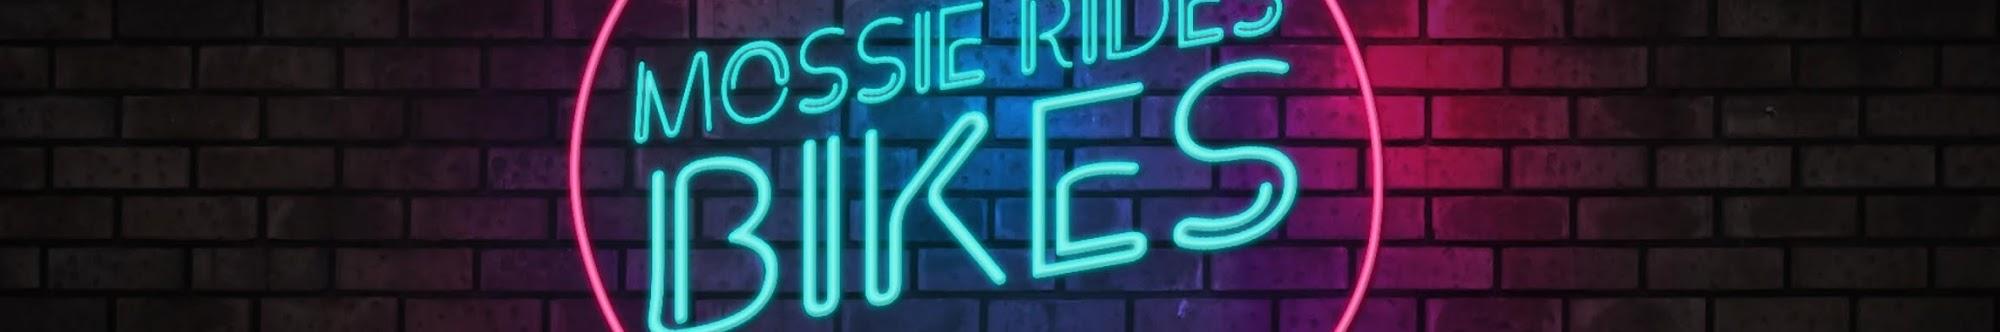 Mossie Rides Bikes